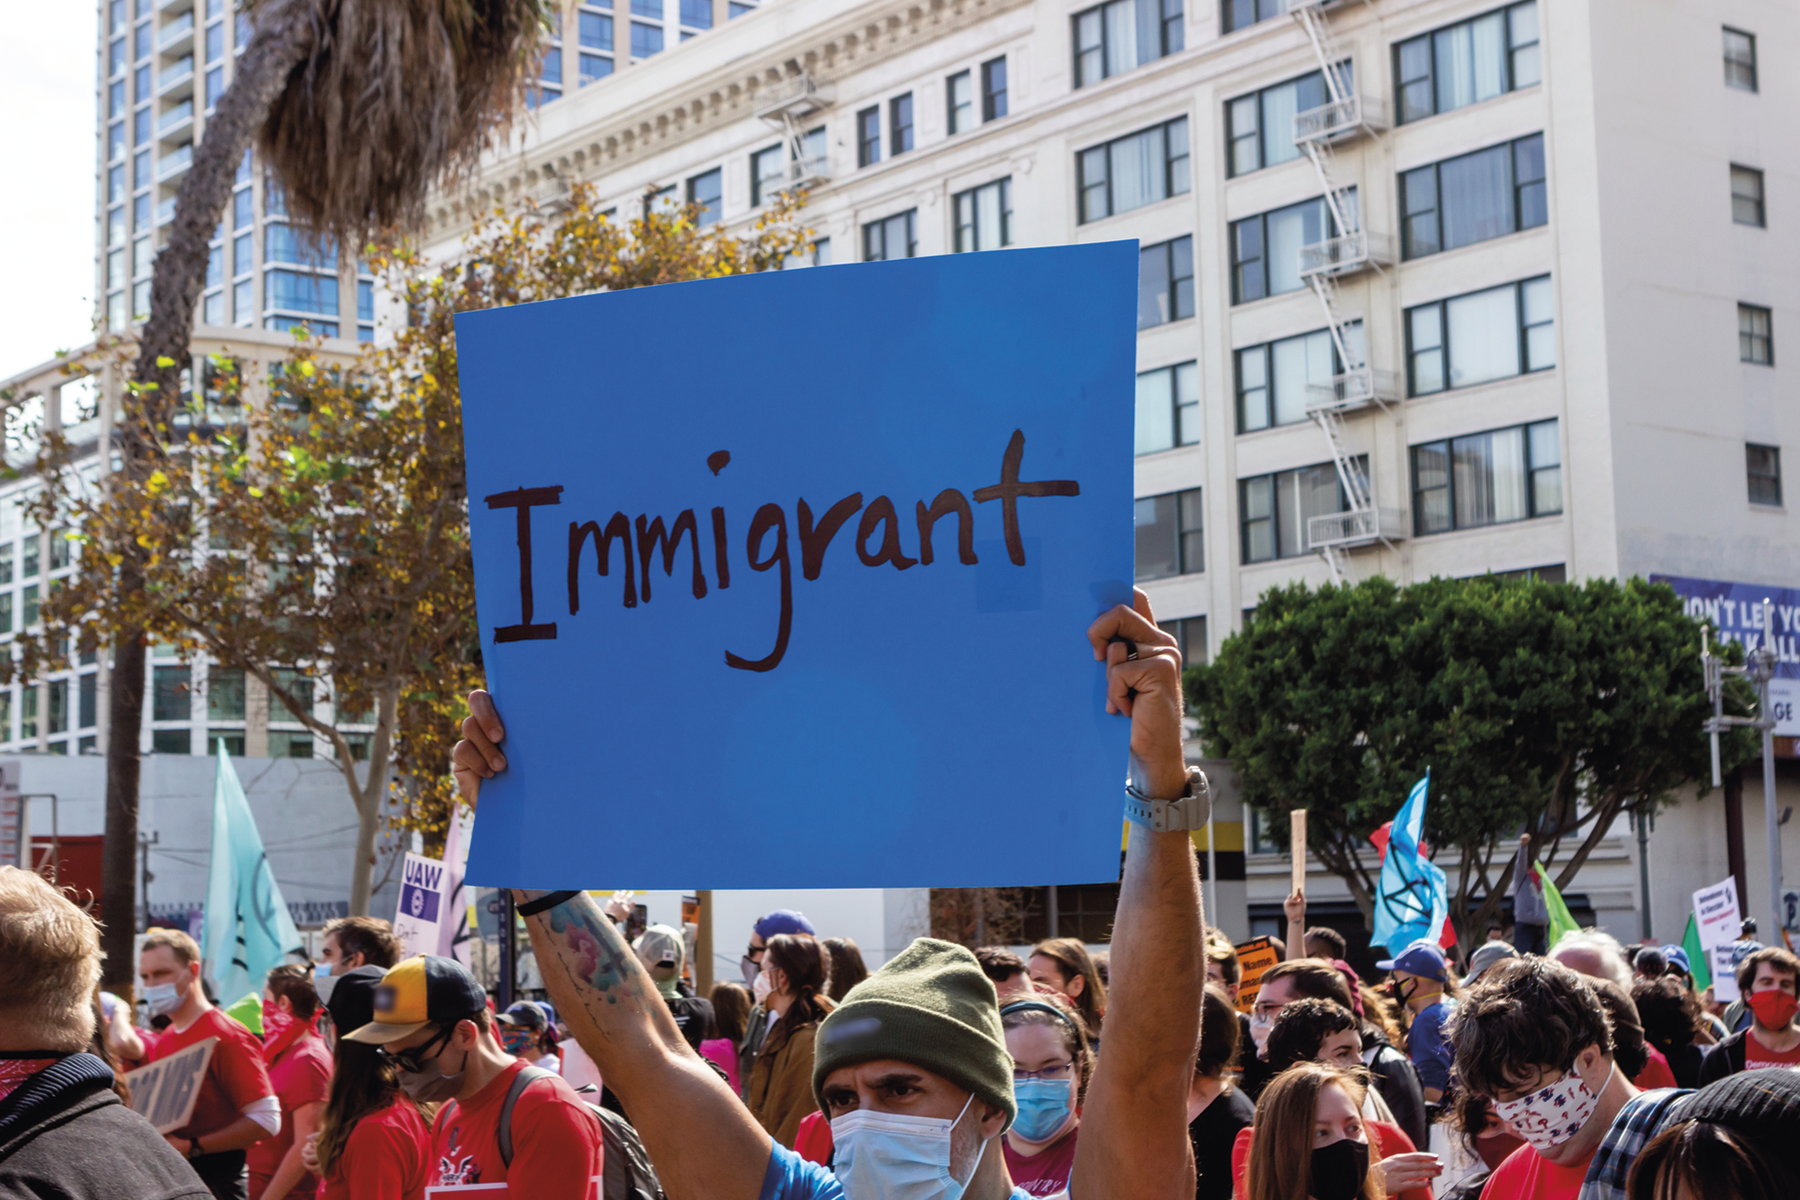 Fotografia. Destaque para uma manifestação repleta de pessoas. Em destaque, um cartaz com a inscrição: Immigrant. Ao fundo, edifícios e algumas árvores.